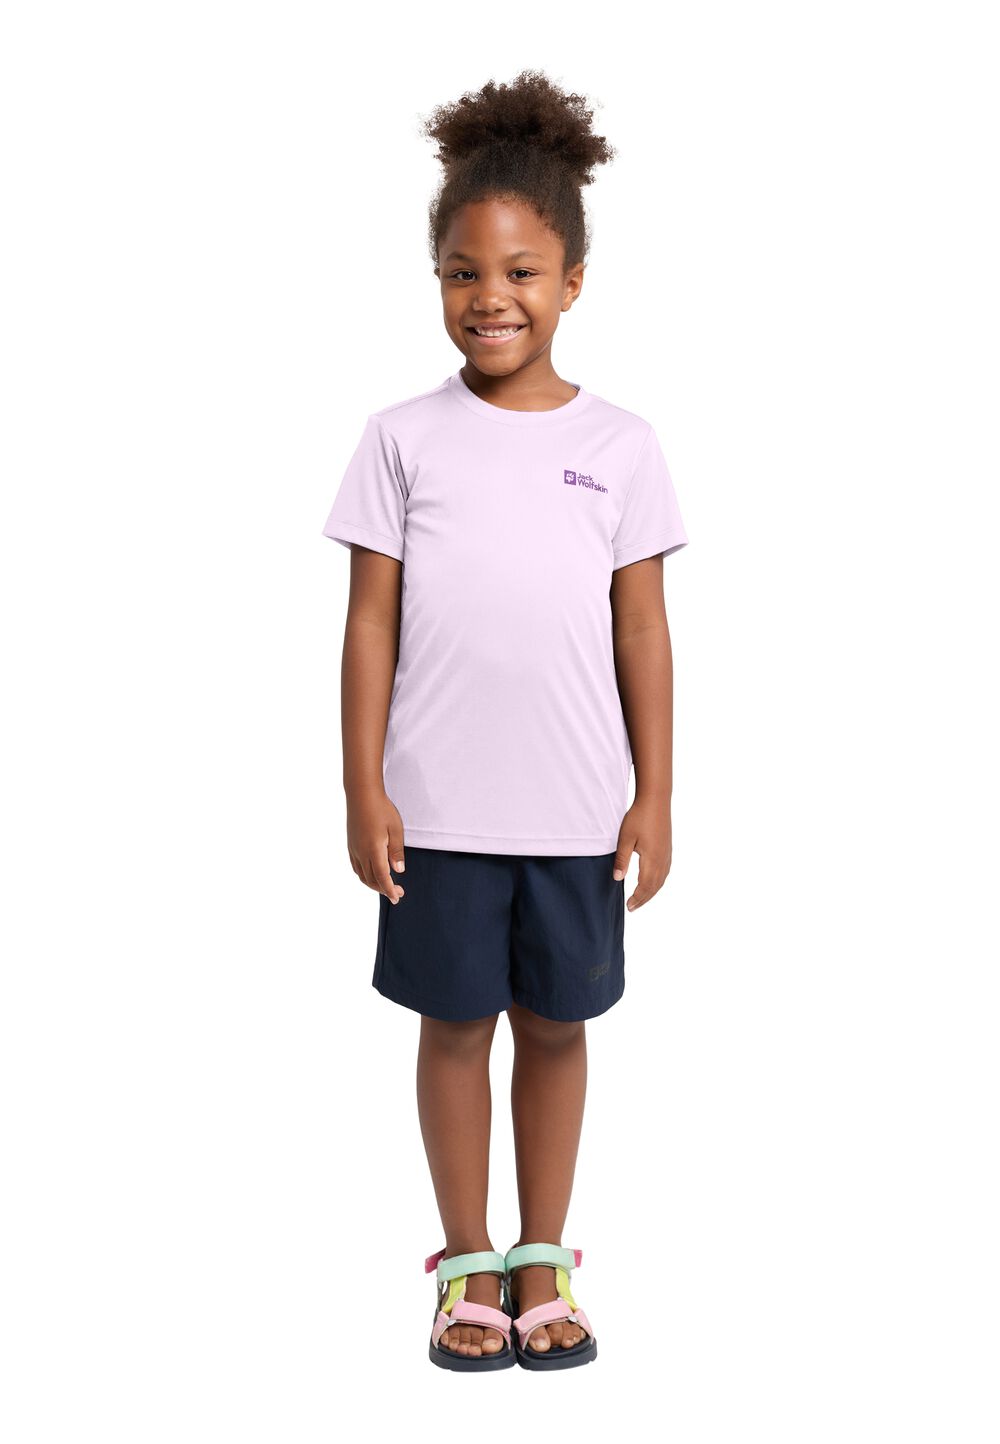 Jack Wolfskin Active Solid T-Shirt Kids Functioneel shirt Kinderen 164 pale lavendar pale lavendar